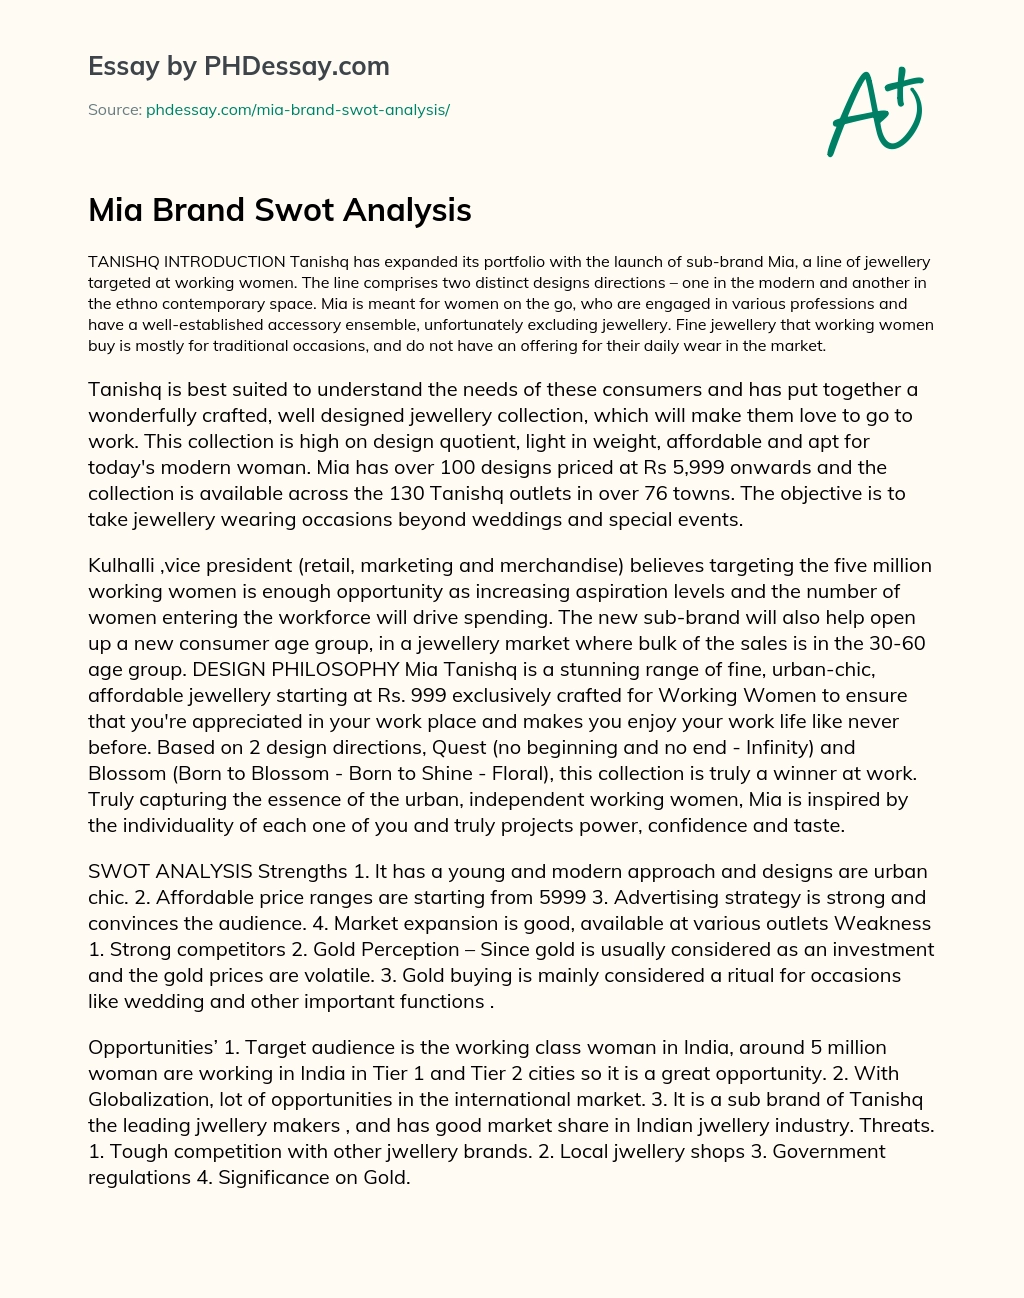 Mia Brand Swot Analysis essay